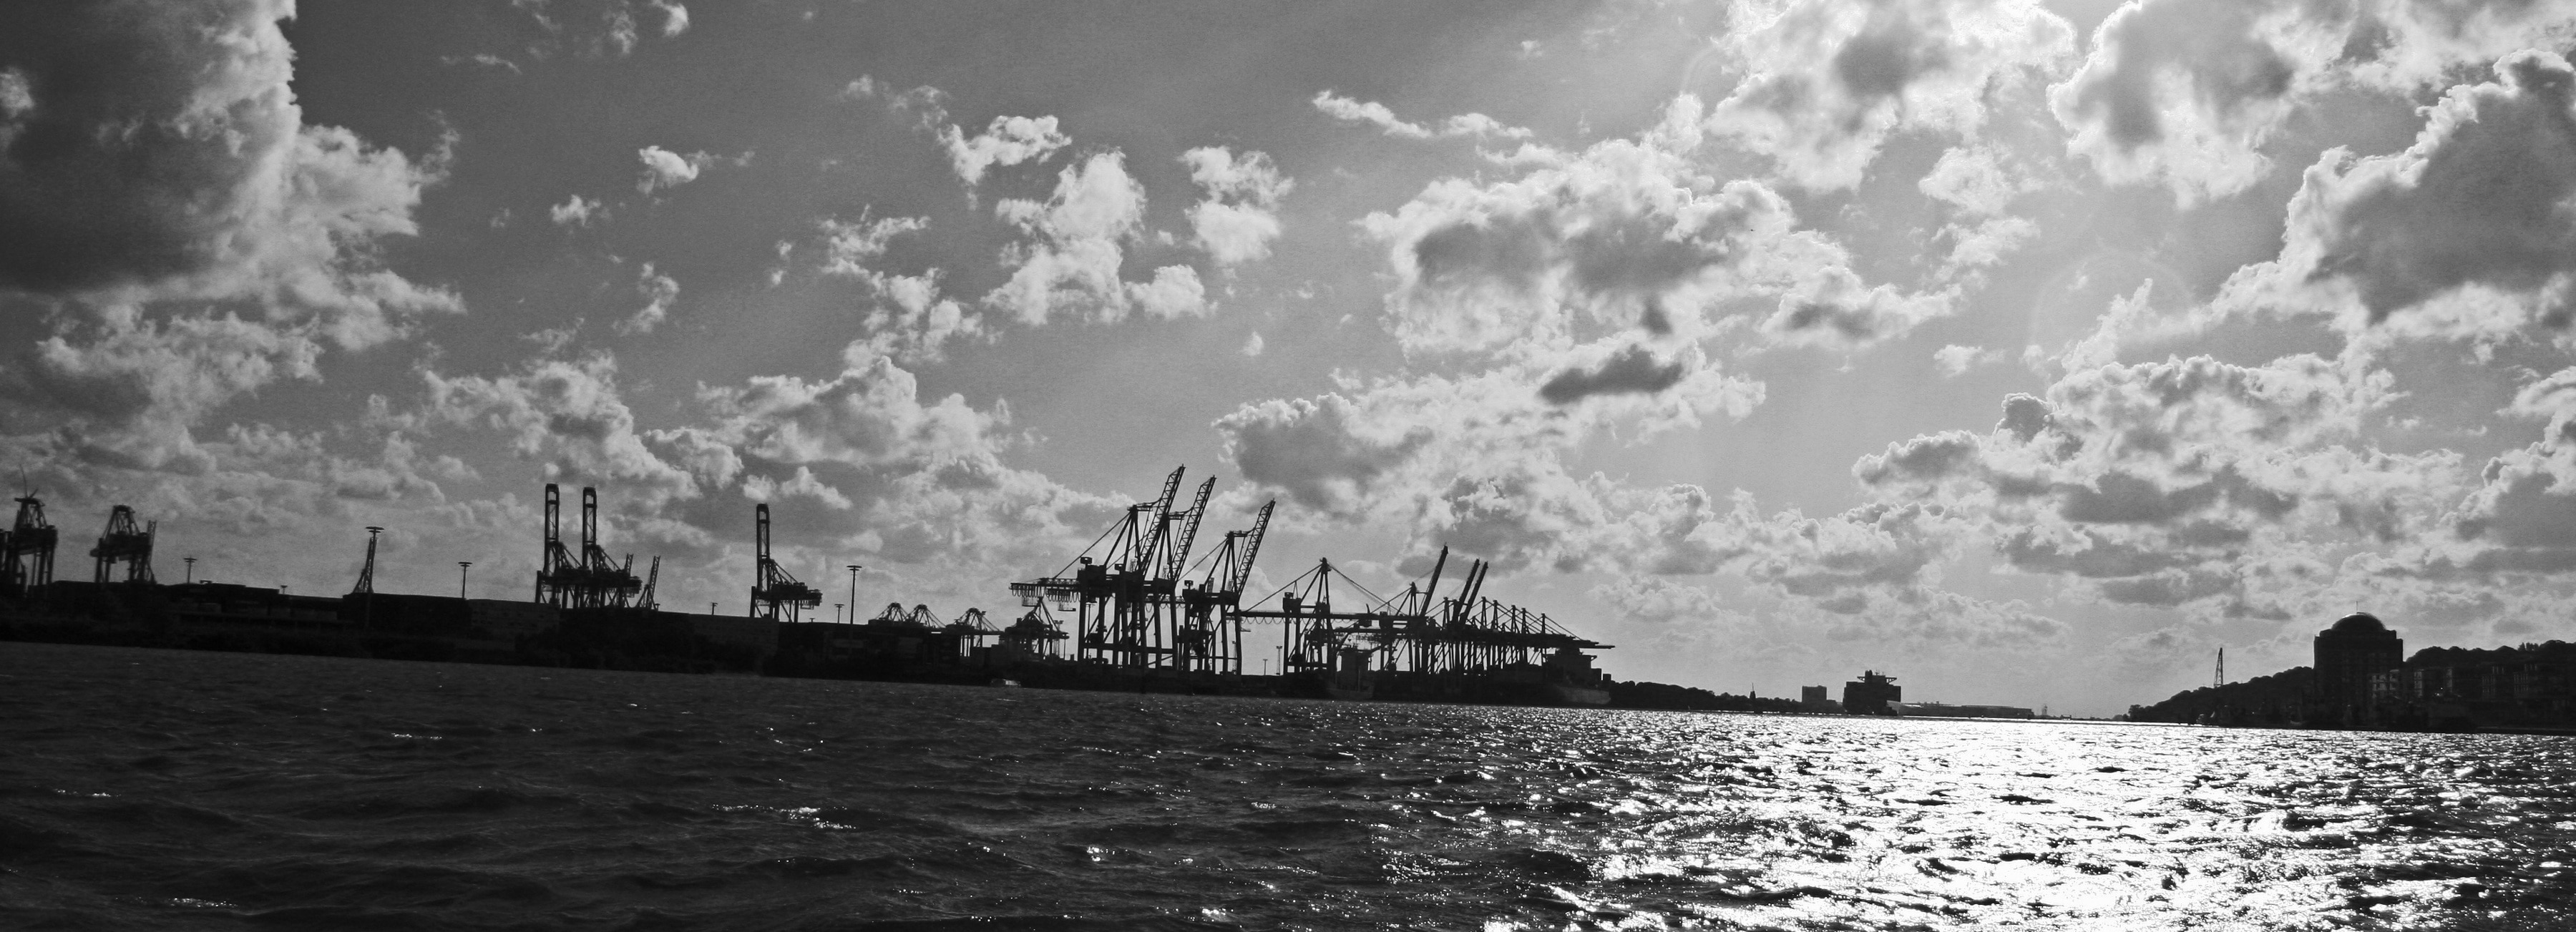 Hamburg Port, Harbour Cranes, Elbe, cloud - sky, water